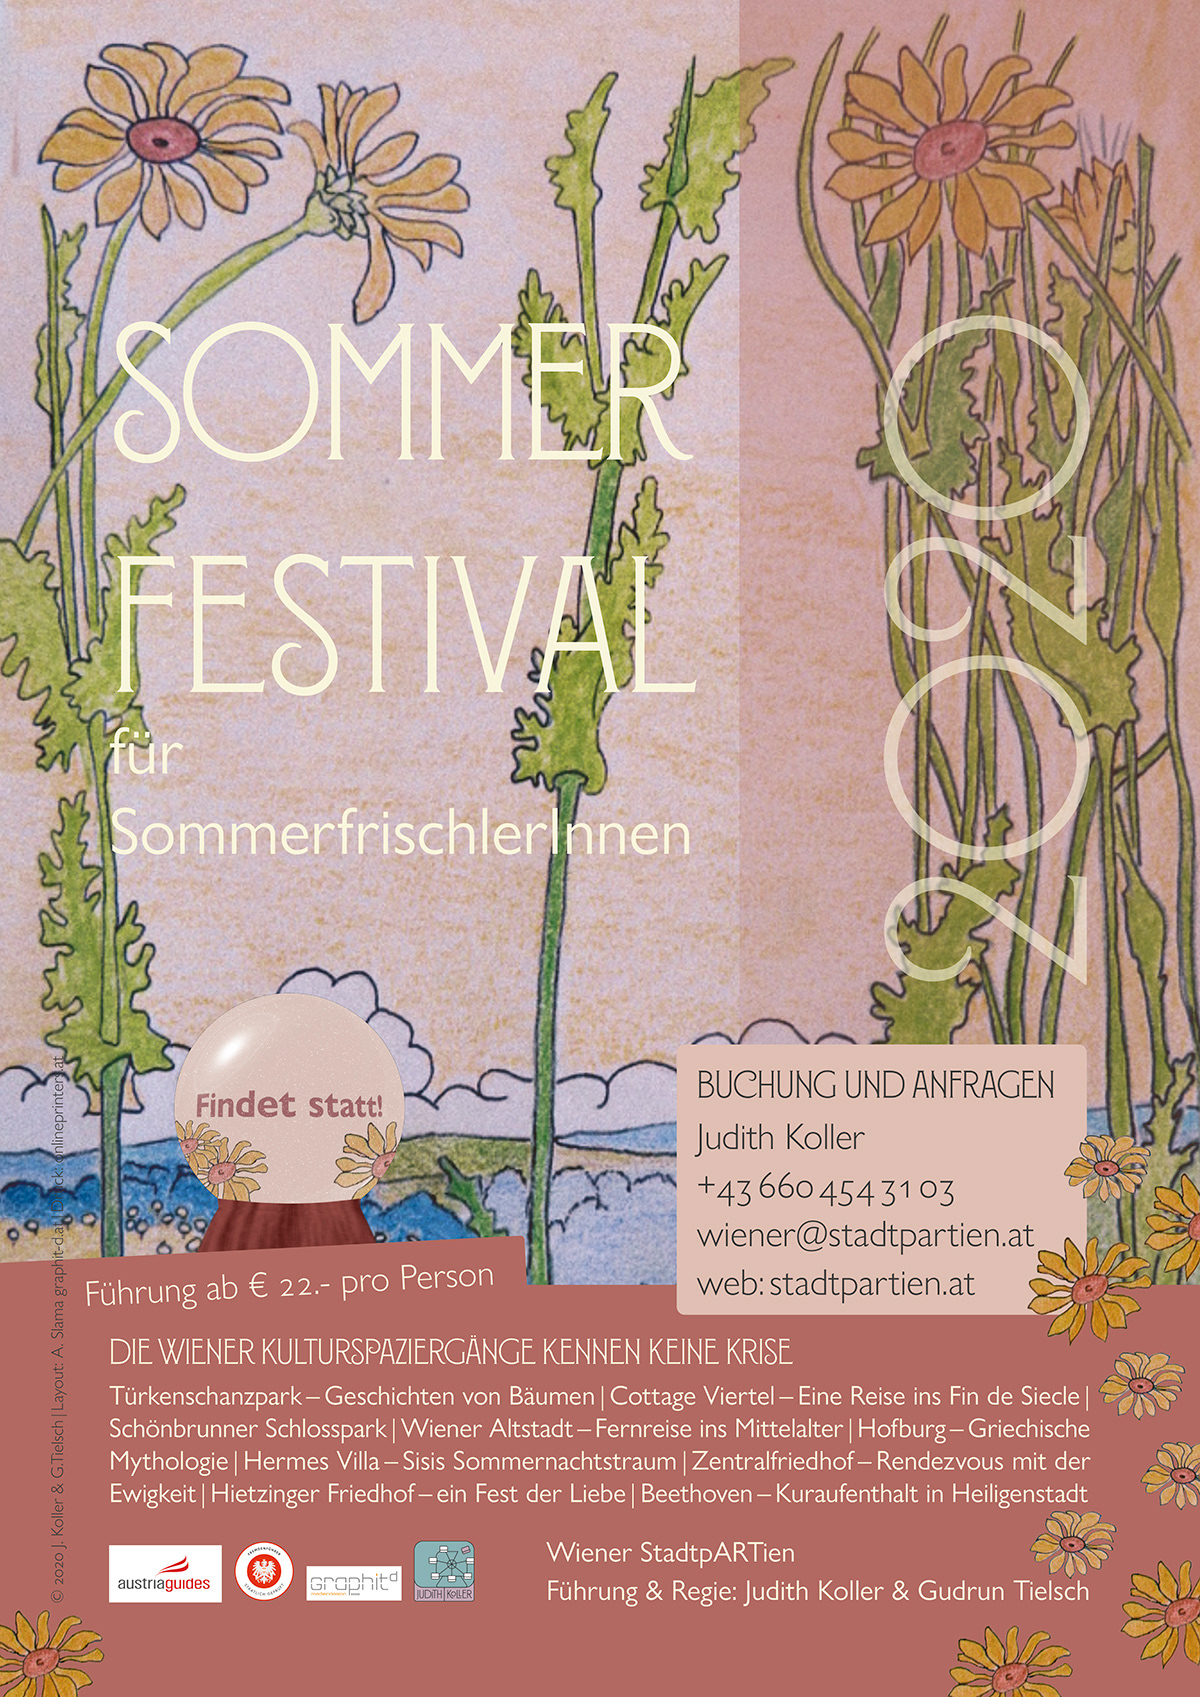 Das Plakat für StadtpARTien – Festival der Kulturspaziergänge​​​​​​​​​​​, Sommer 2020